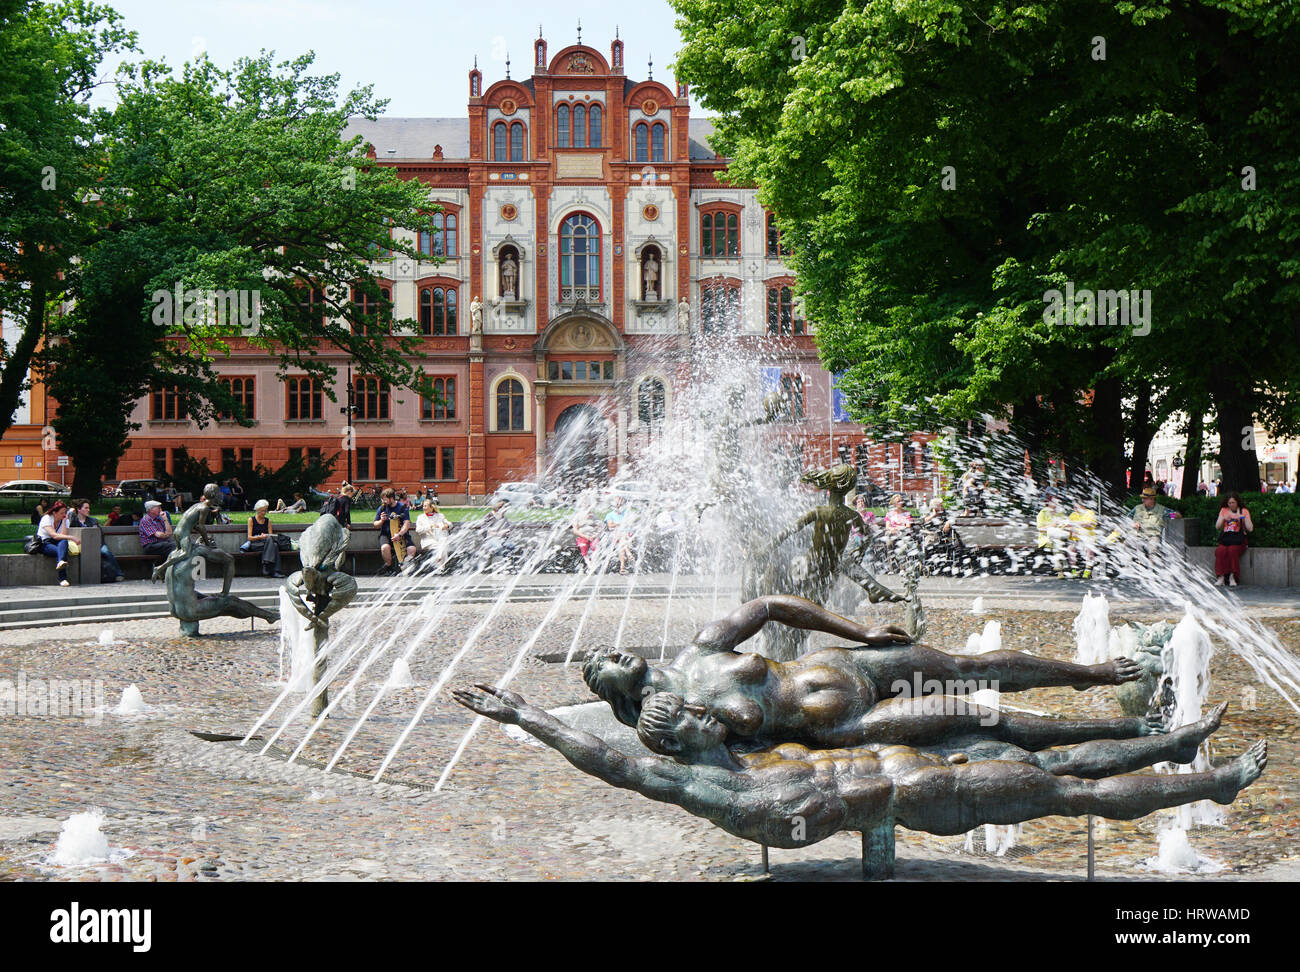 Rostock, Deutschland - 30. Mai 2016: Universitätsplatz mit Brunnen von Vitalität und Universitätsgebäude. Universität Rostock, gegründet im Jahre 1419, ist eine Stockfoto